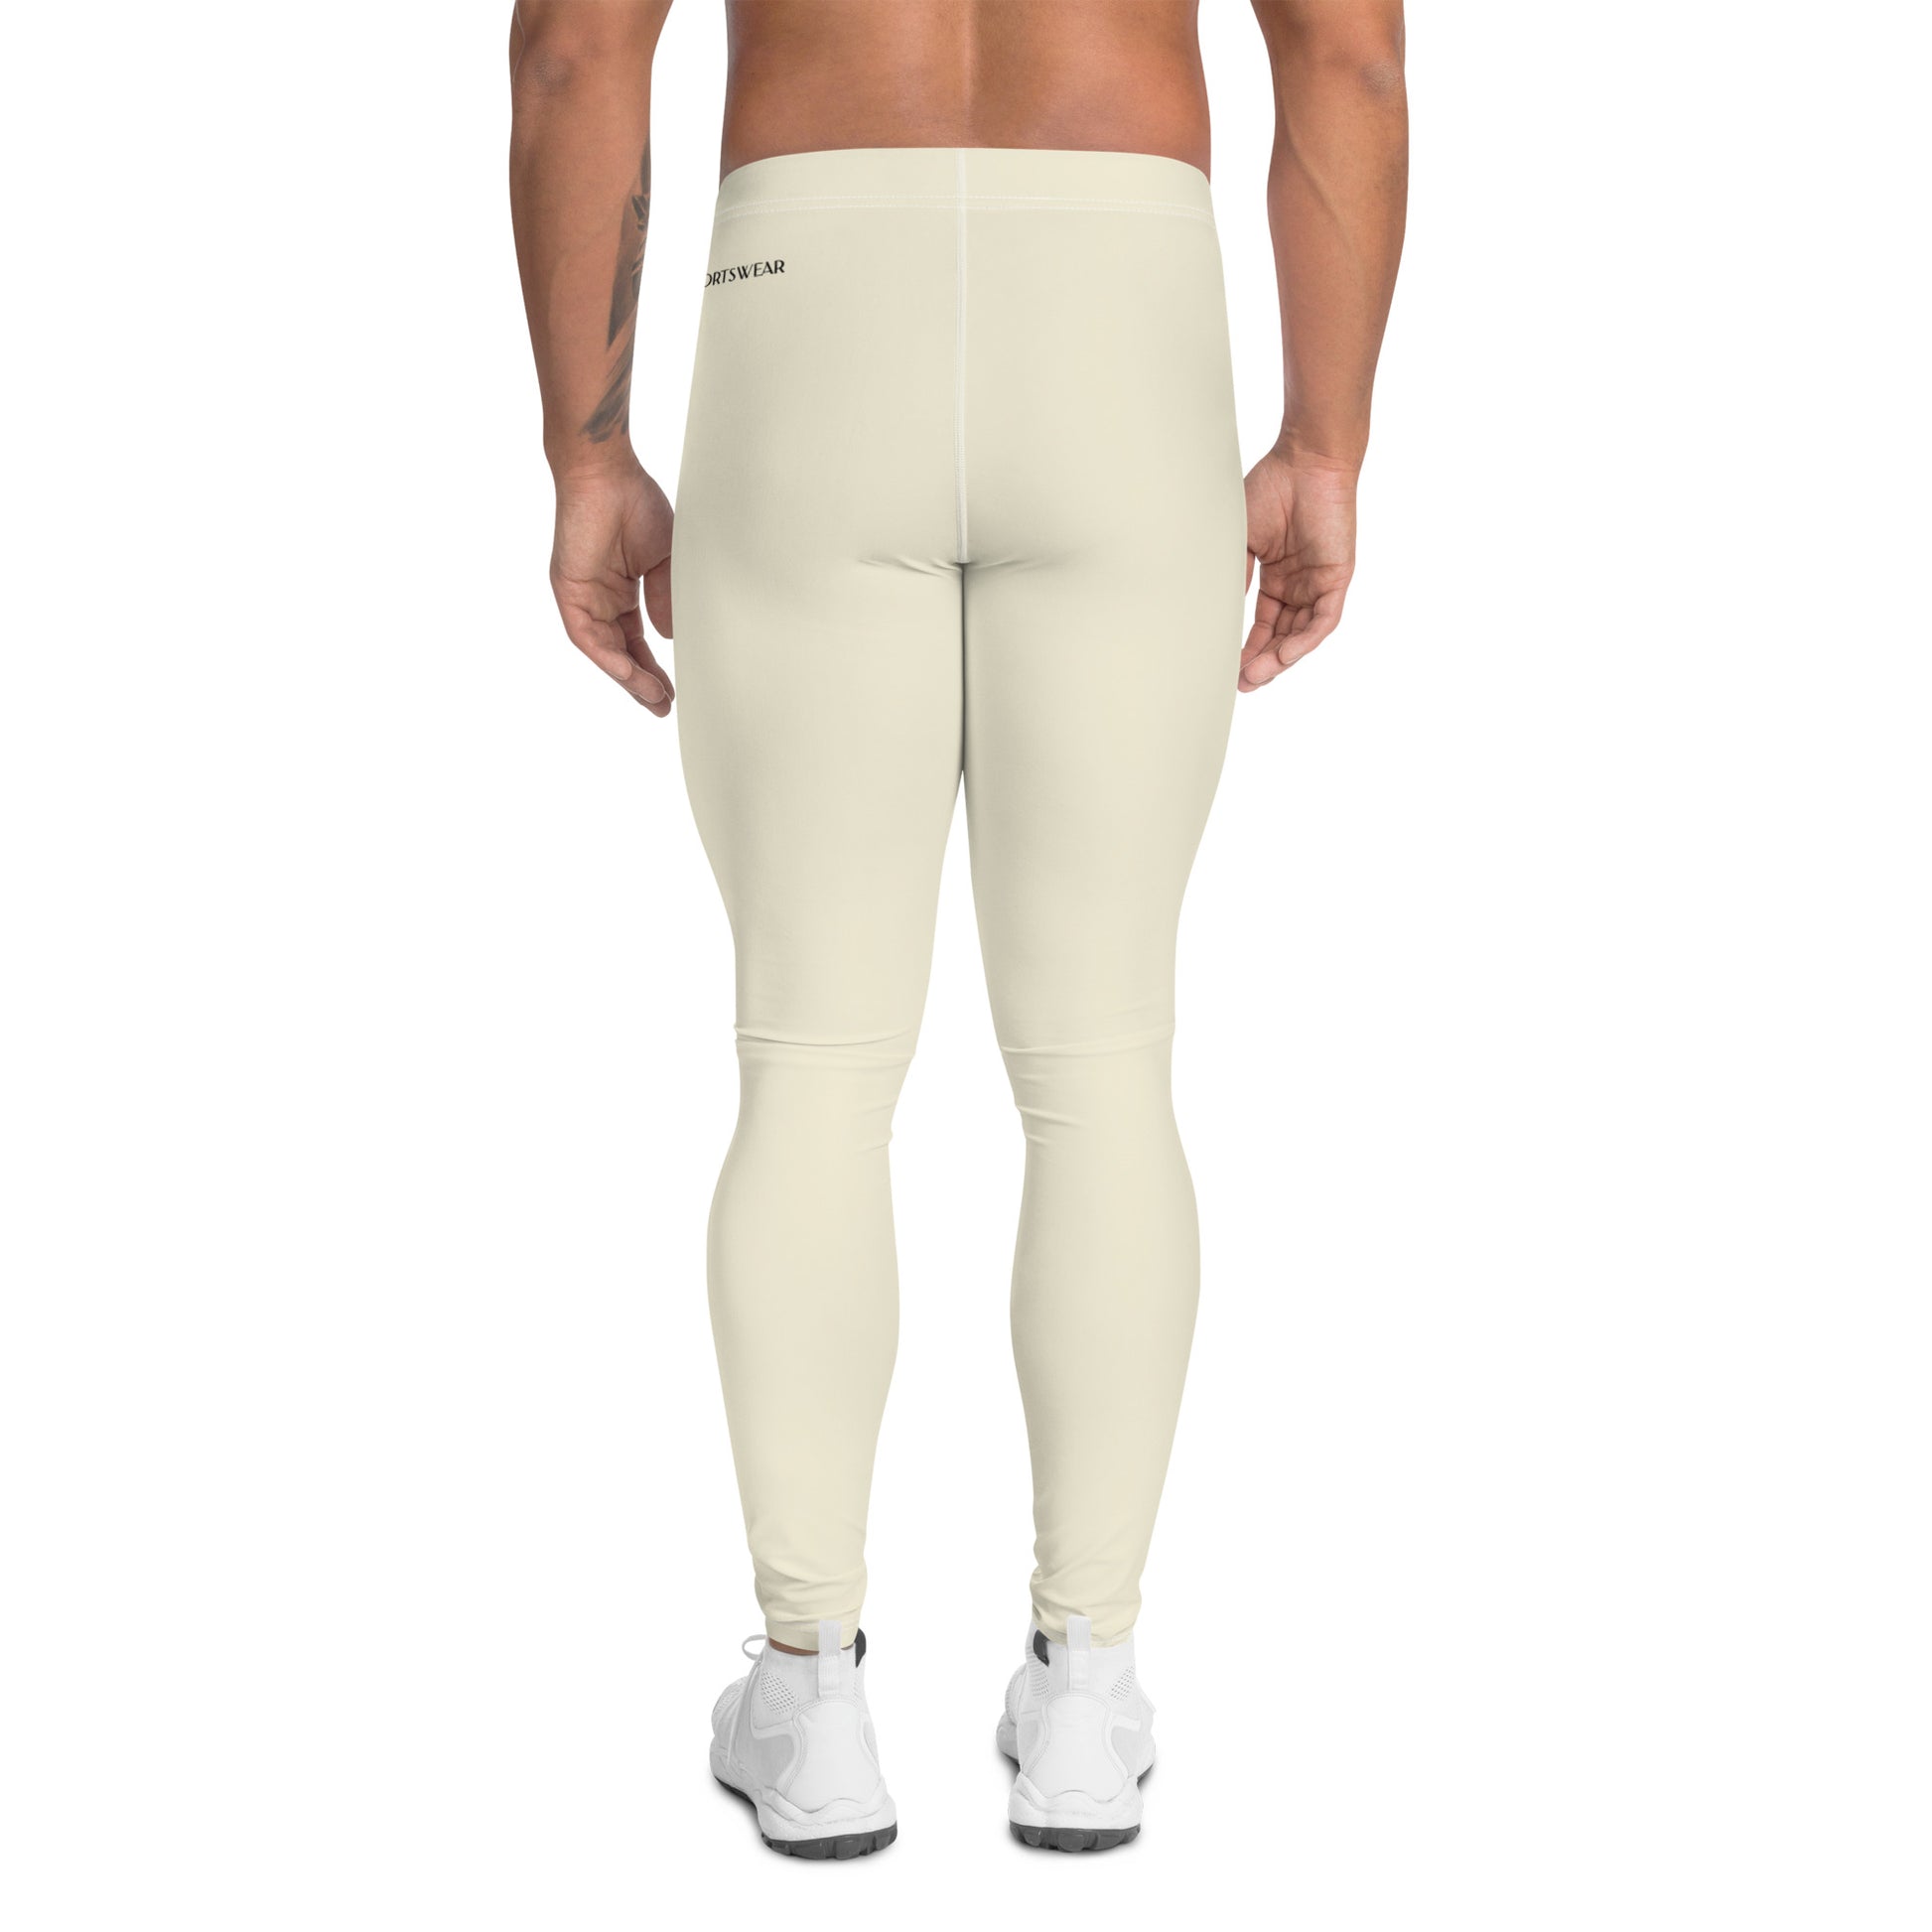 Humble Sportswear, men's color match leggings, men's active compression leggings